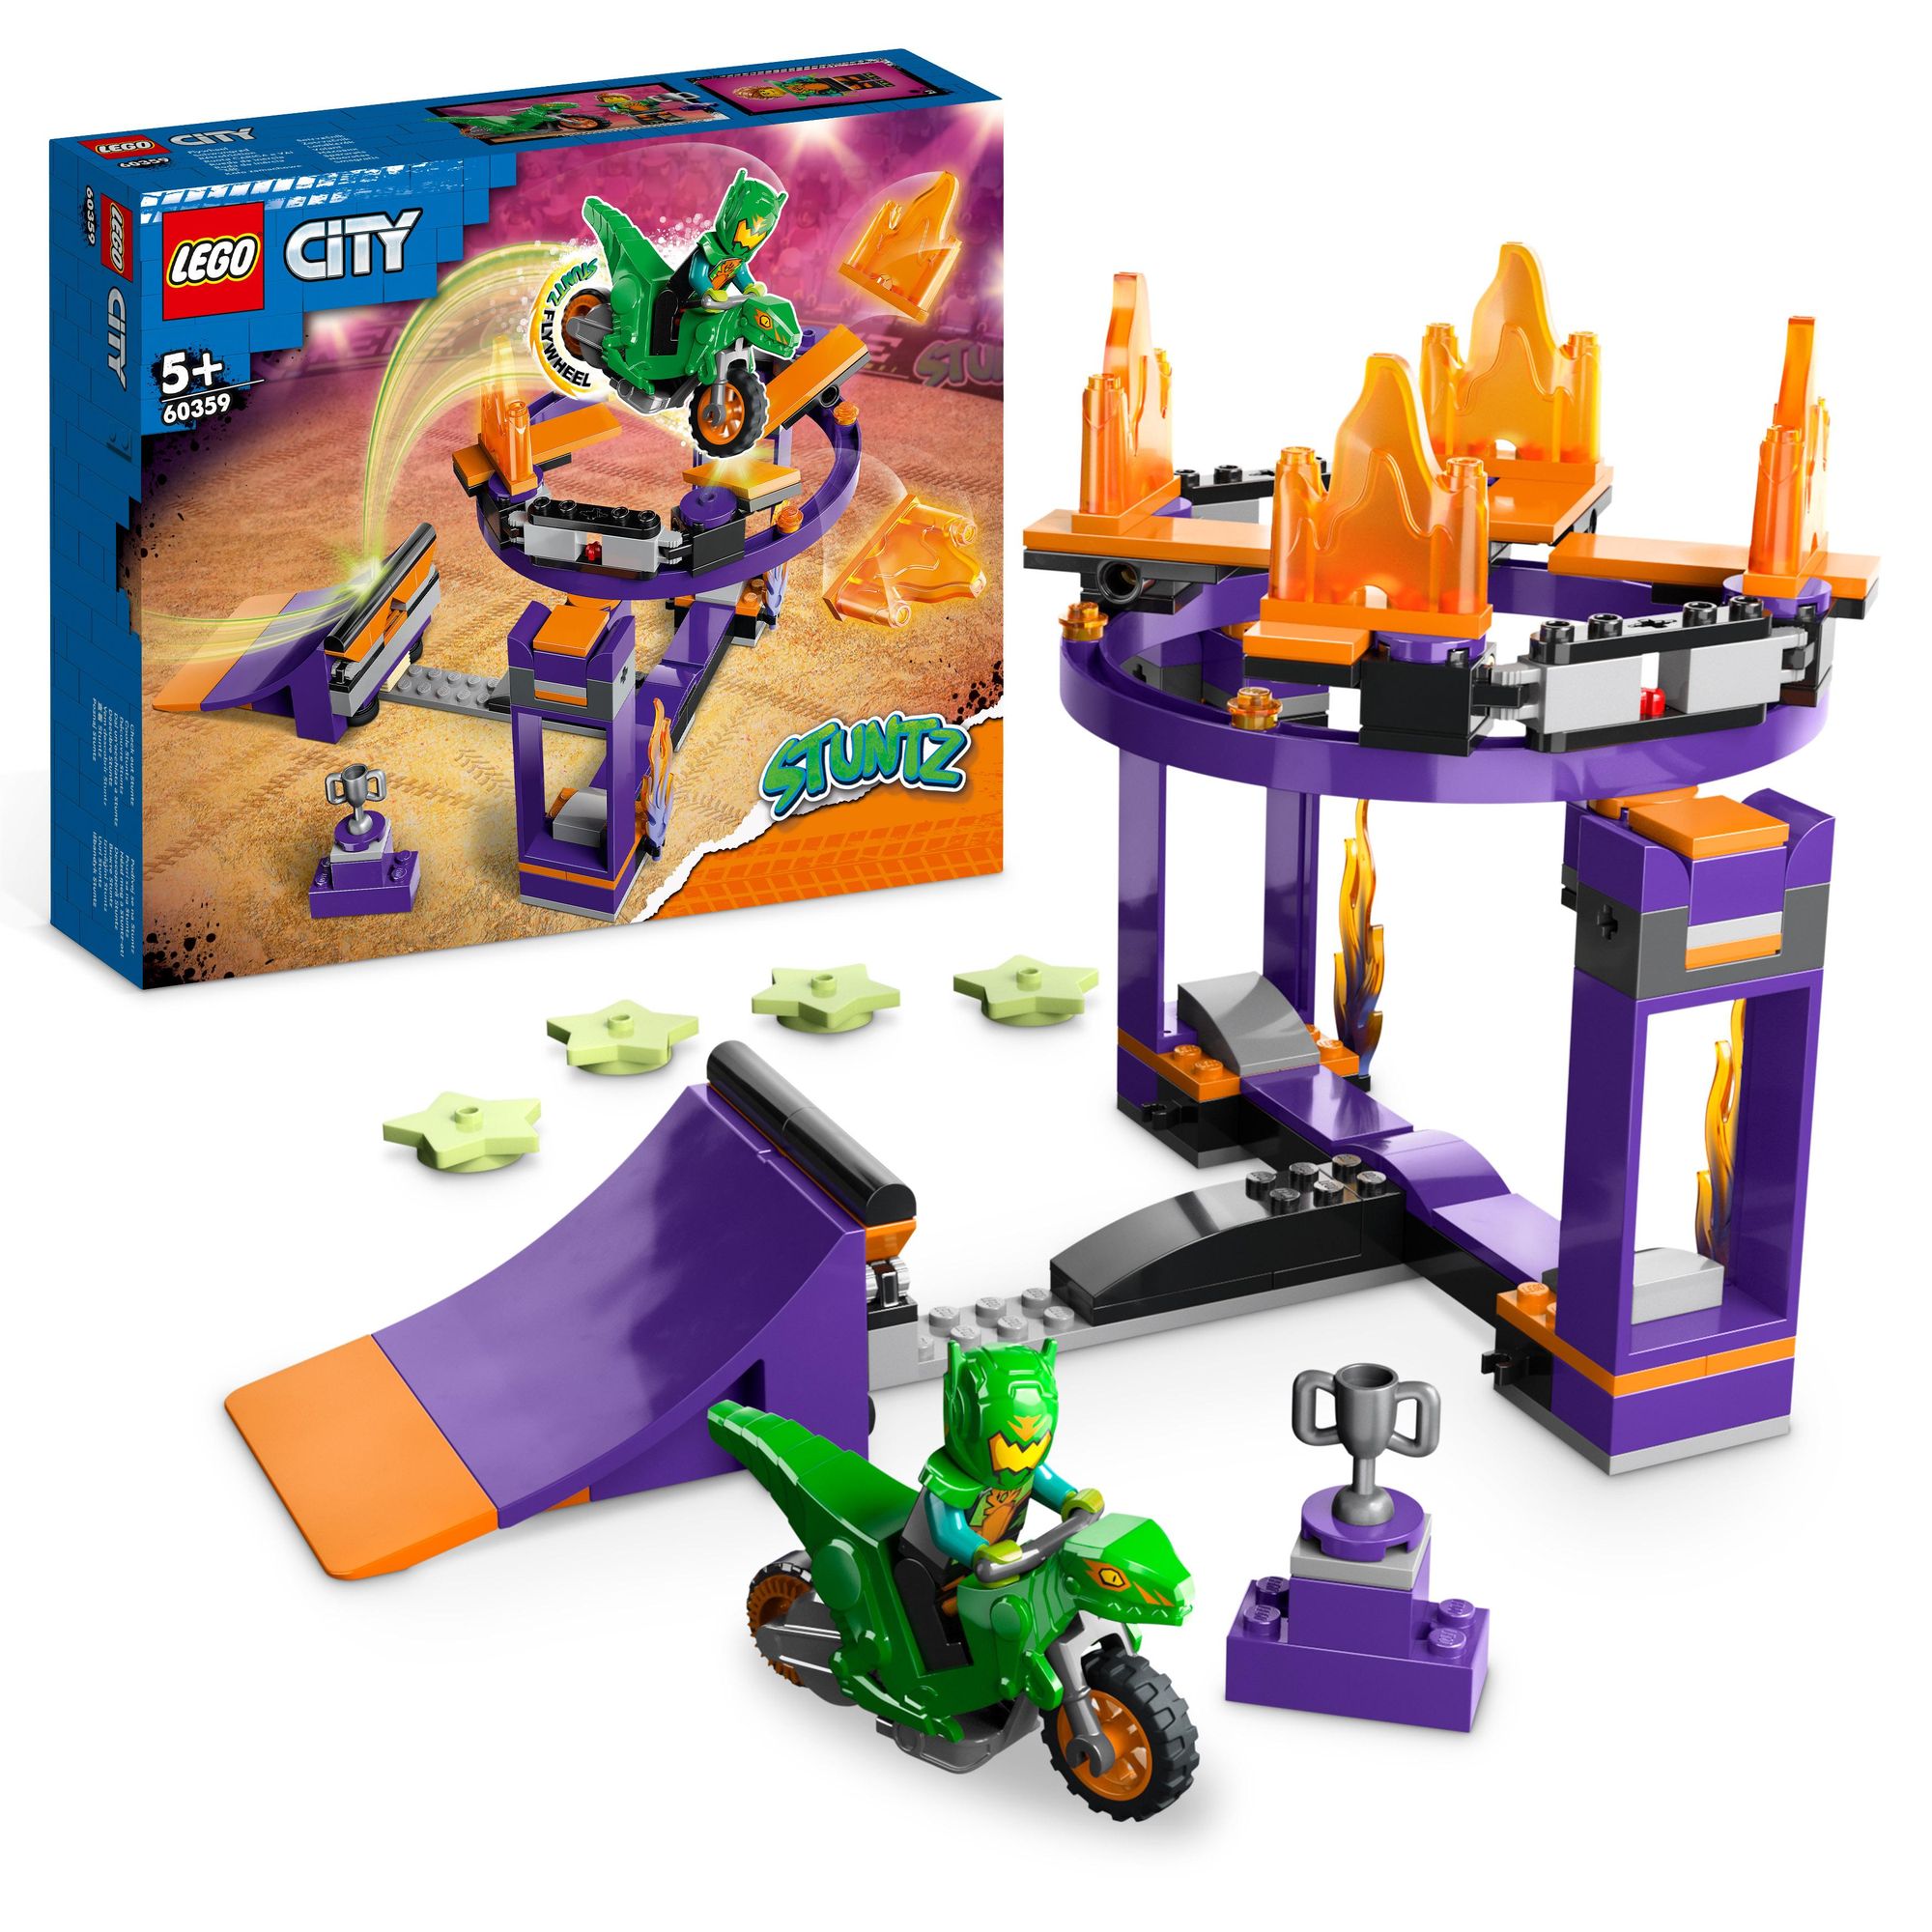 LEGO City Stuntz kaufen Kinder\' Spielwaren Sturzflug-Challenge 60359 Action-Spielzeug für 